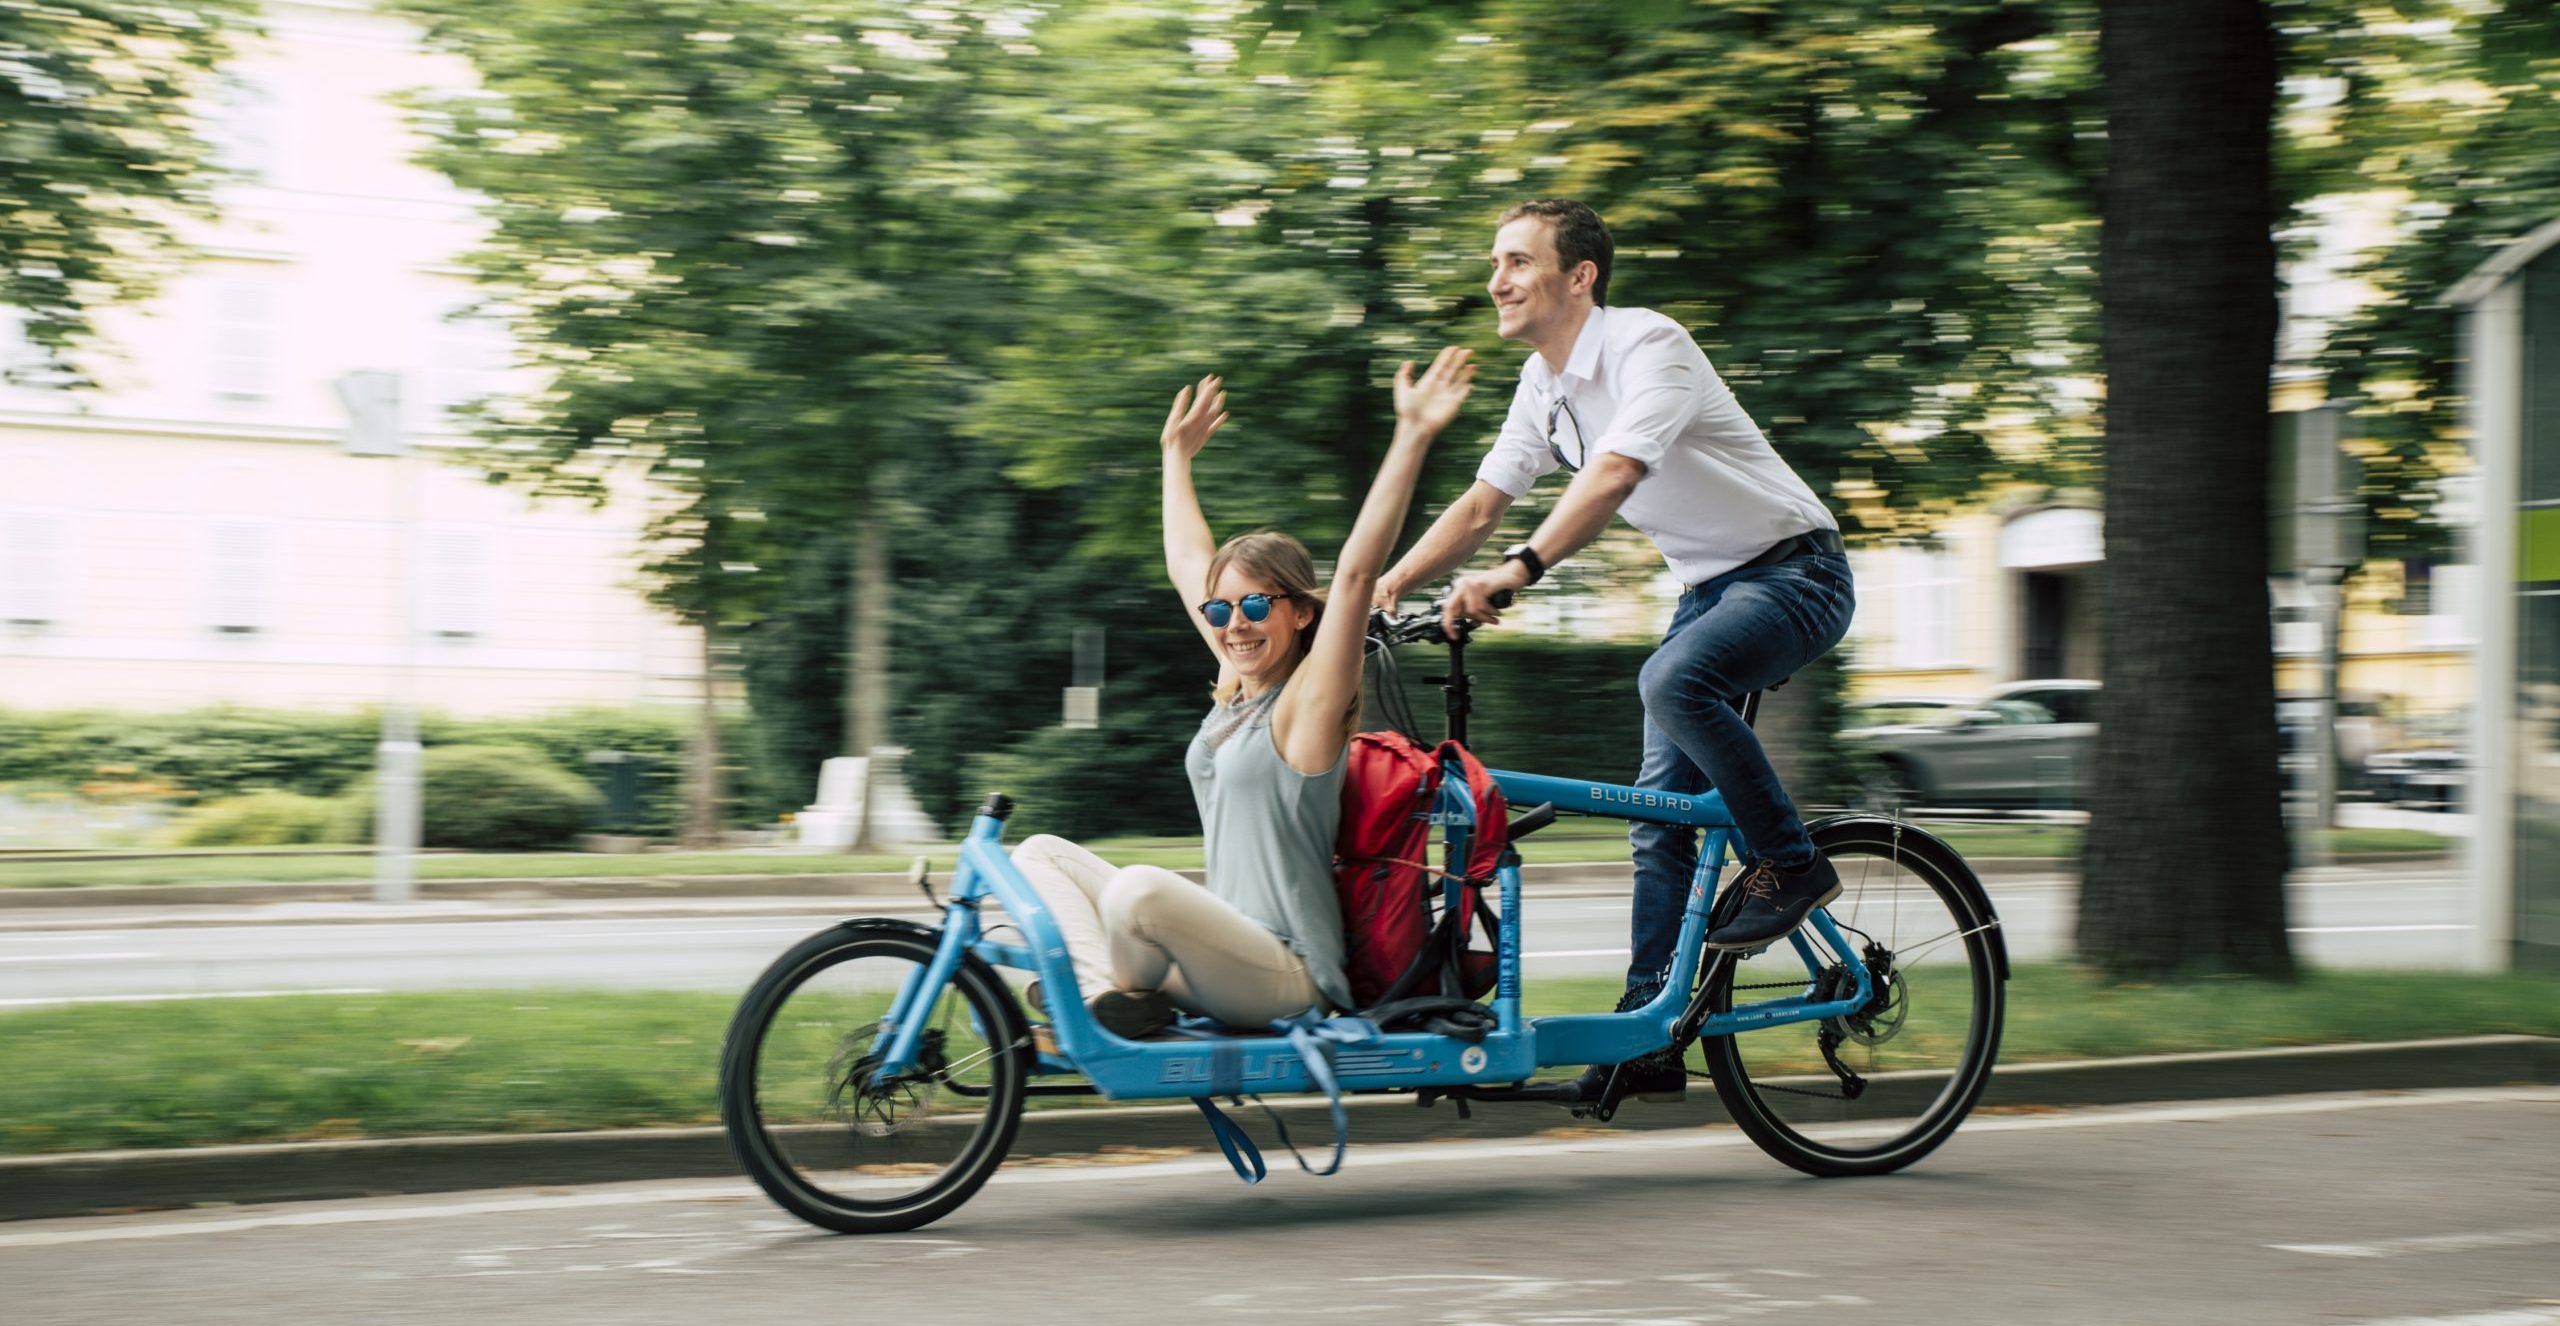 Mann transportiert Frau auf einem blauen Lastenrad, welche die Arme nach oben streckt und lächelt.